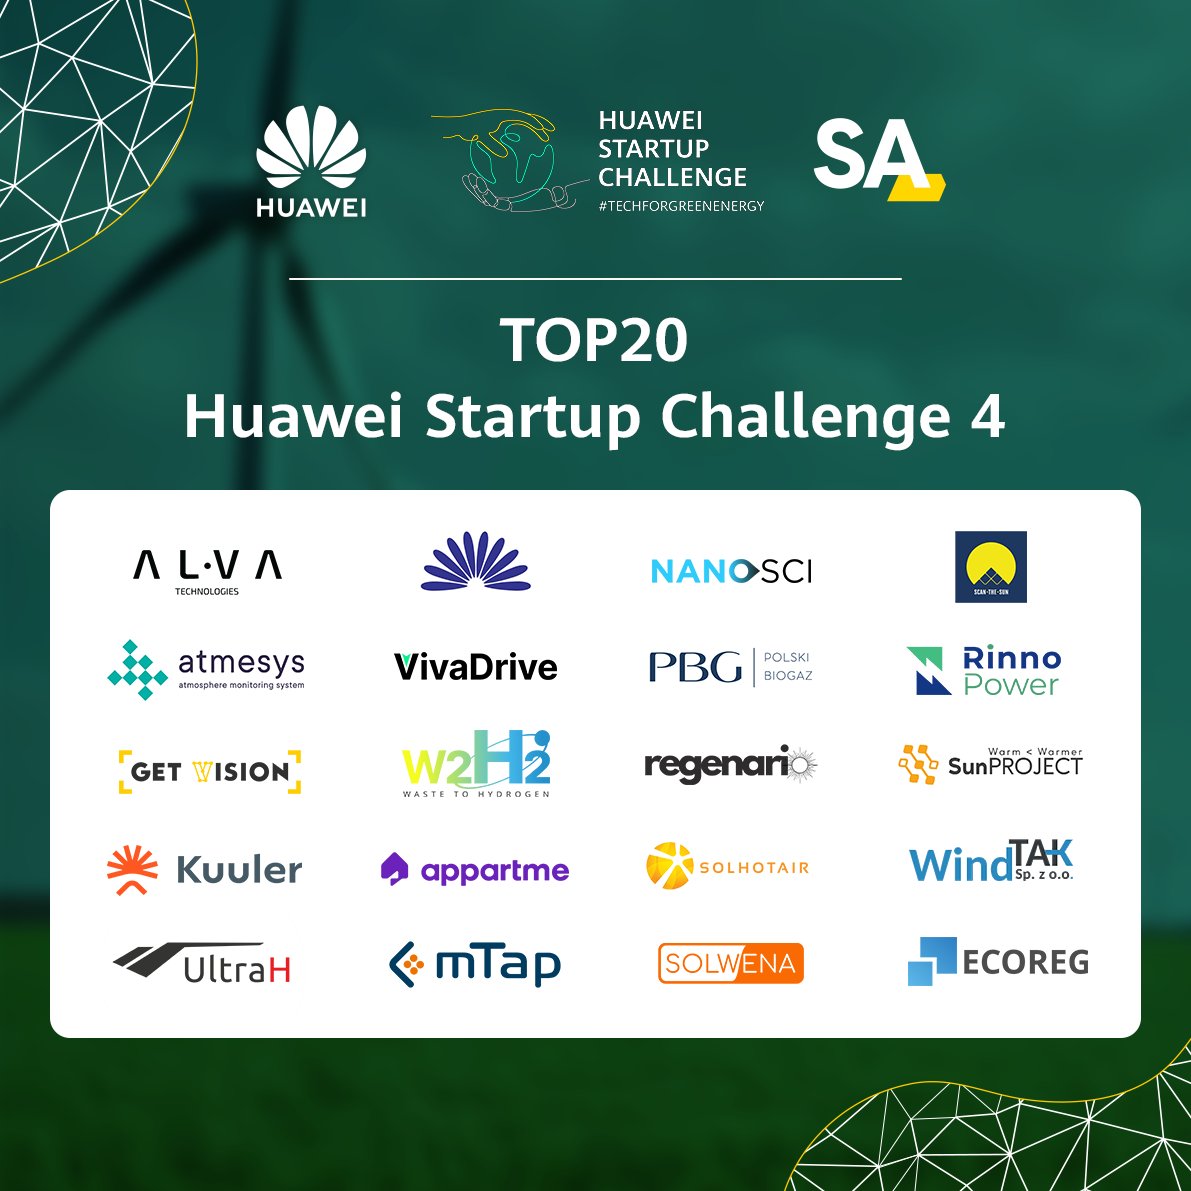 Z przyjemnością informujemy, że Kapituła konkursu #HuaweiStartupChallenge dokonała wyboru 20 najlepszych projektów, które przeszły do półfinału! 👏🎉
Startupy zmierzą się teraz z wyzwaniami, których efekty będziecie mogli ocenić już niebawem. 
#HSC4 #HuaweiPolska #BetterTogether